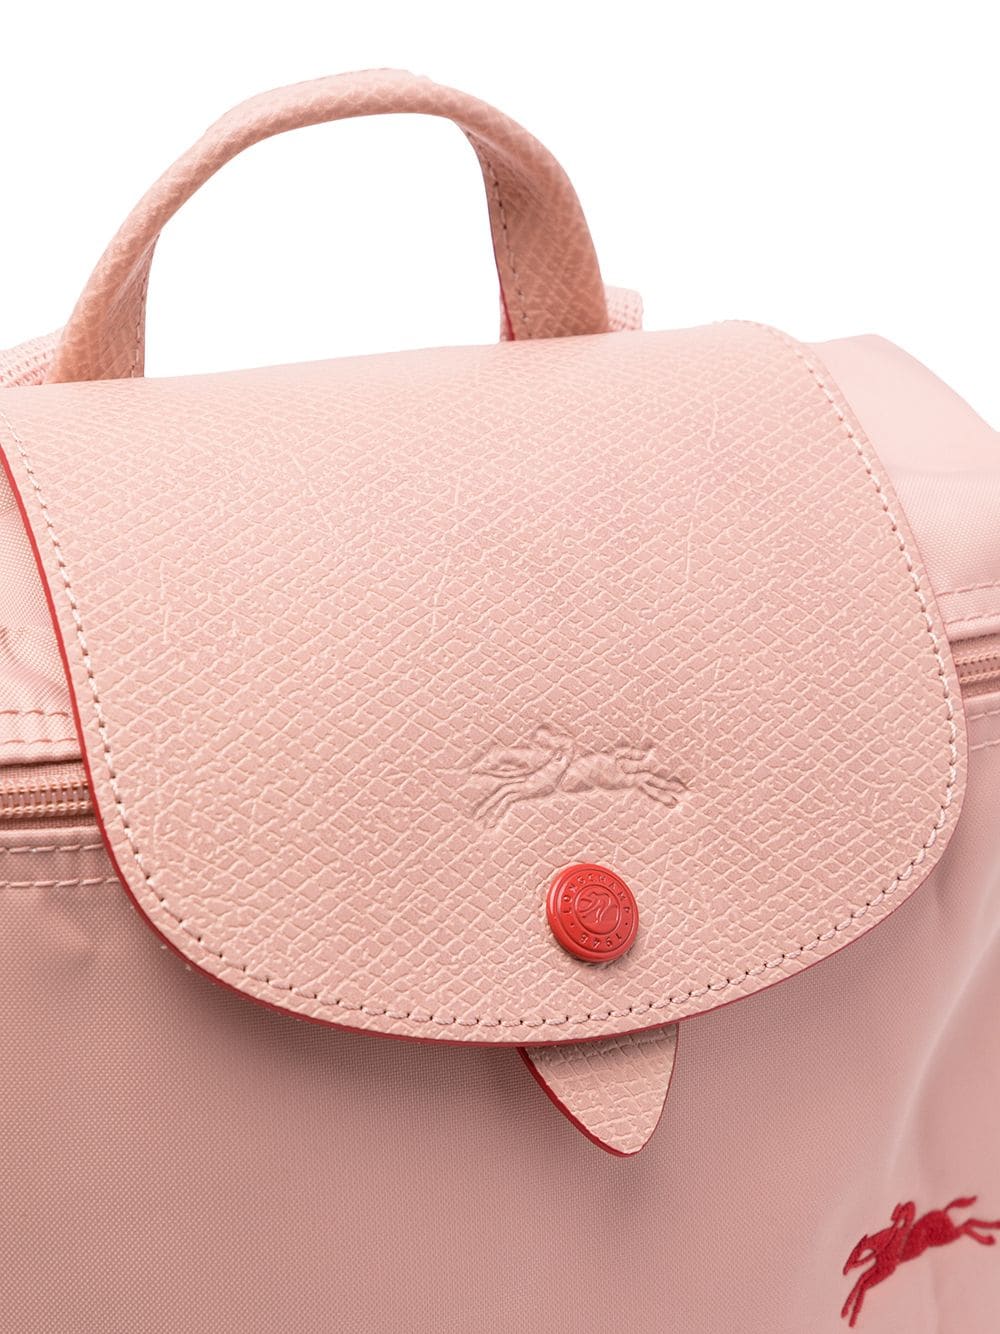 Longchamp Le Pliage Sac A Dos Backpack - Pink Backpacks, Handbags